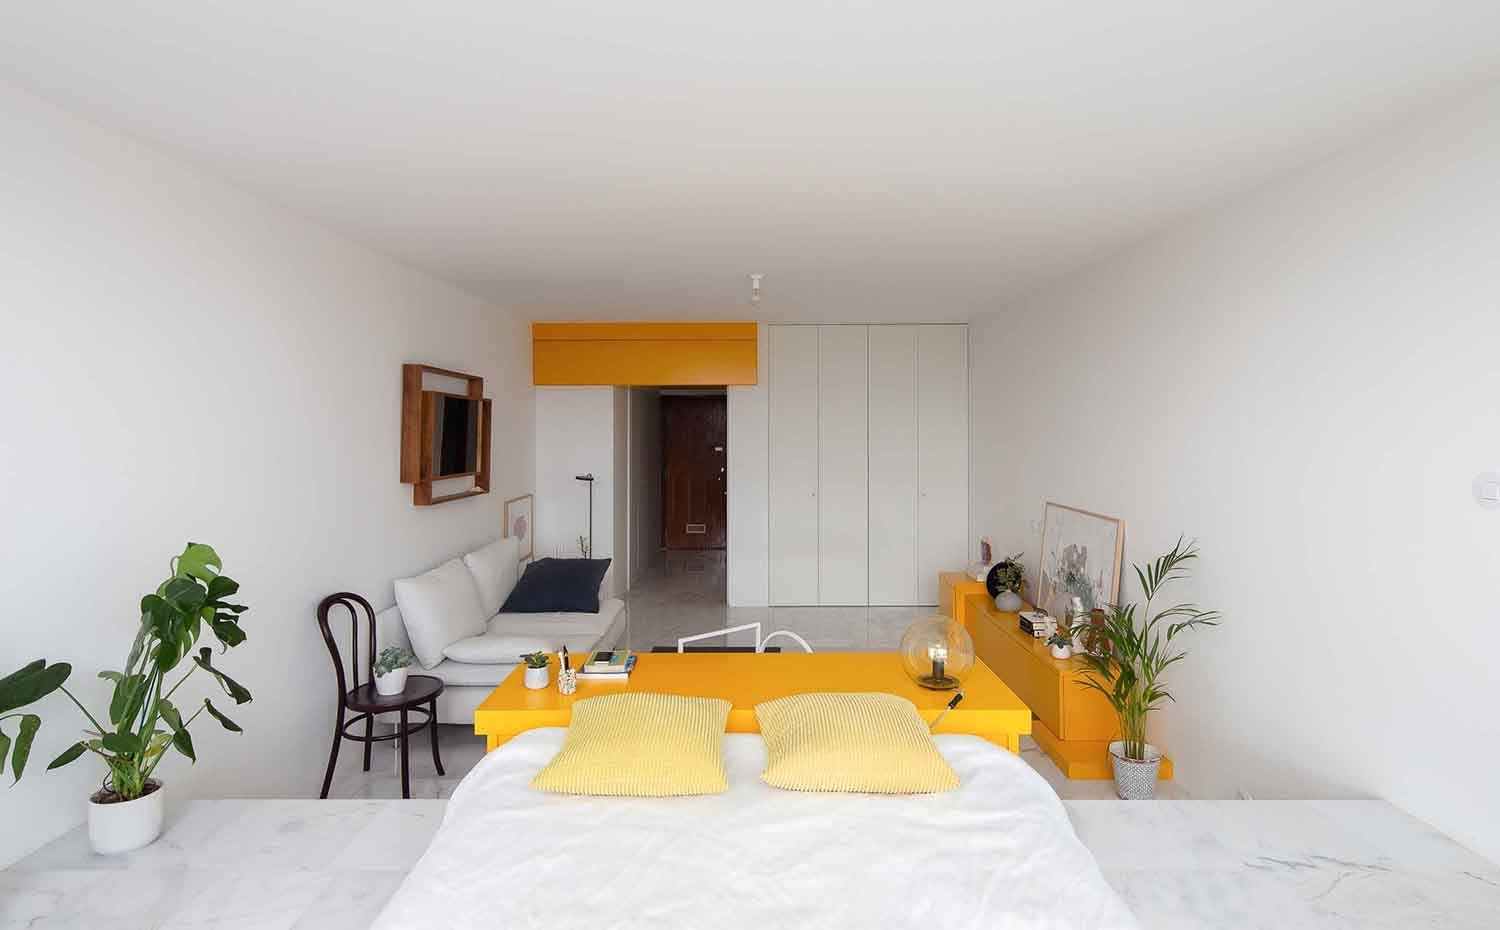 Zona dormitorio, mueble contenedor amarillo separador de ambiente, silla Thonet, sofrá blanco,  mueble bajo amarillo